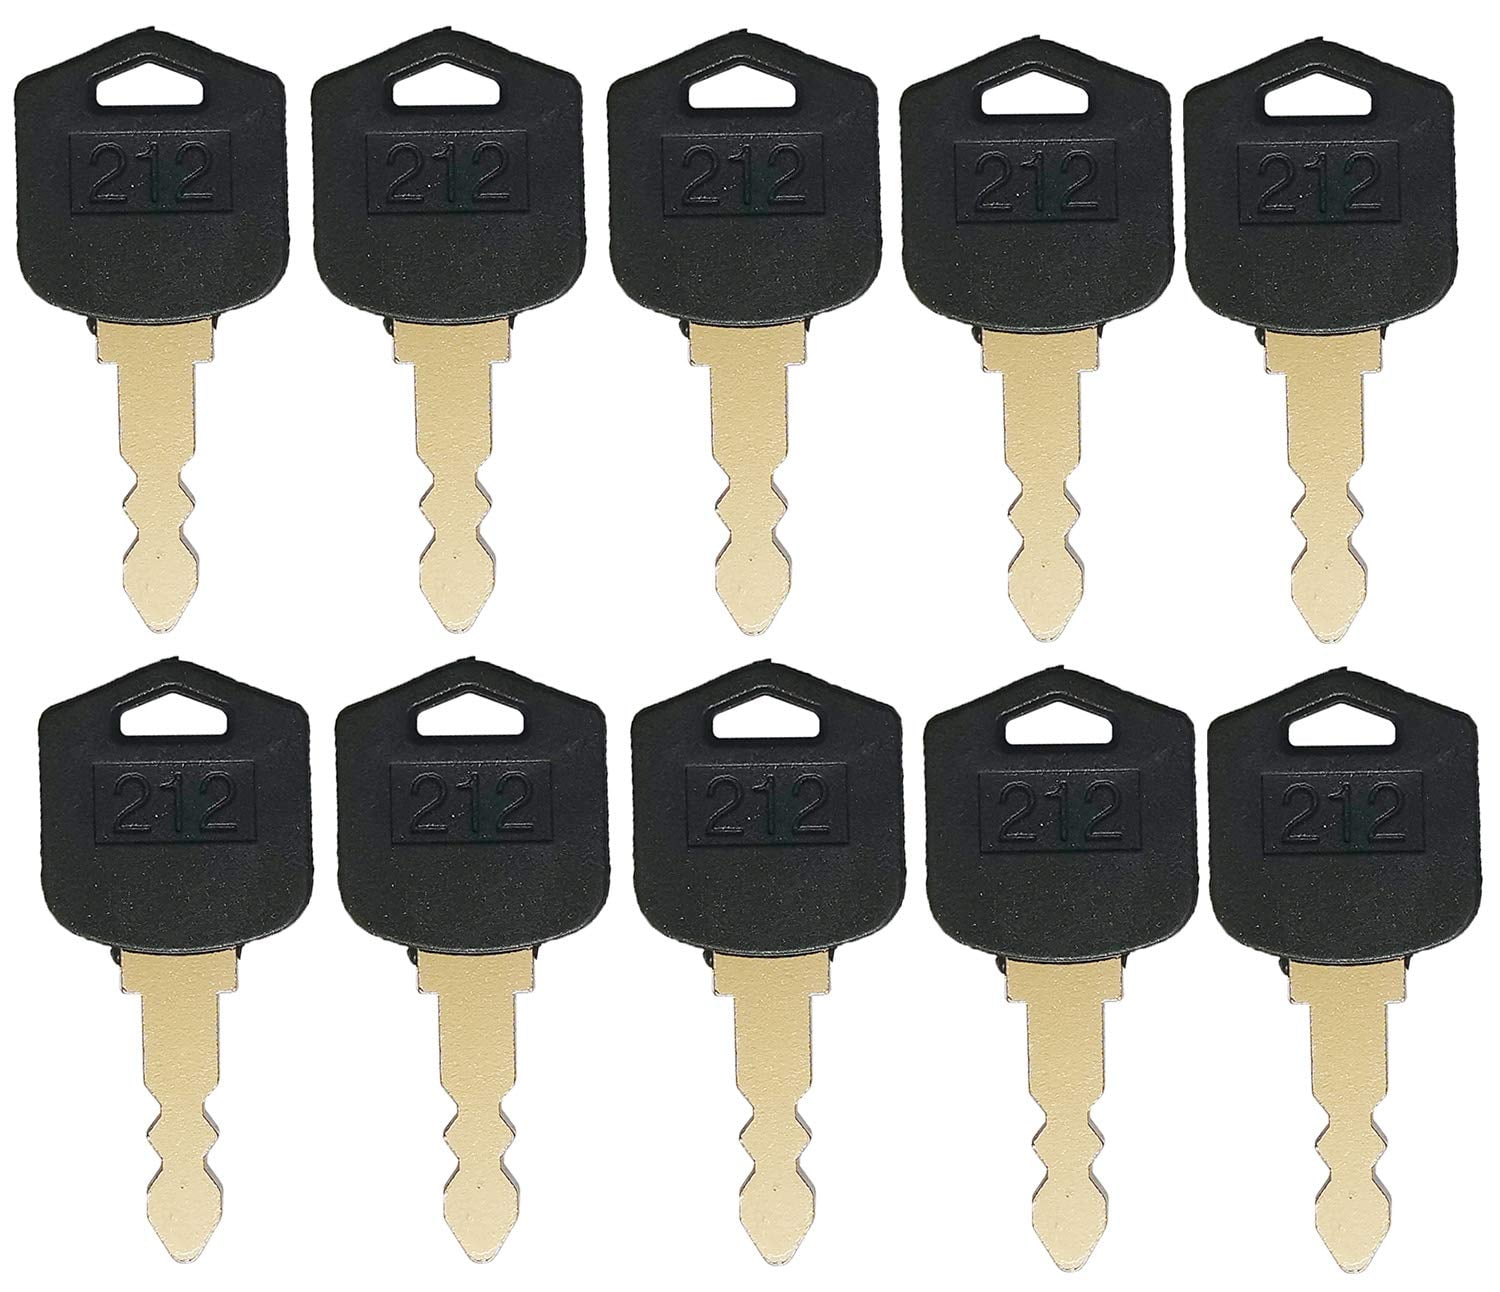 212 Ignition Pack of 5 Keys For Doosan & Daewoo Forklift D25 D35 G25 G35 D554212 